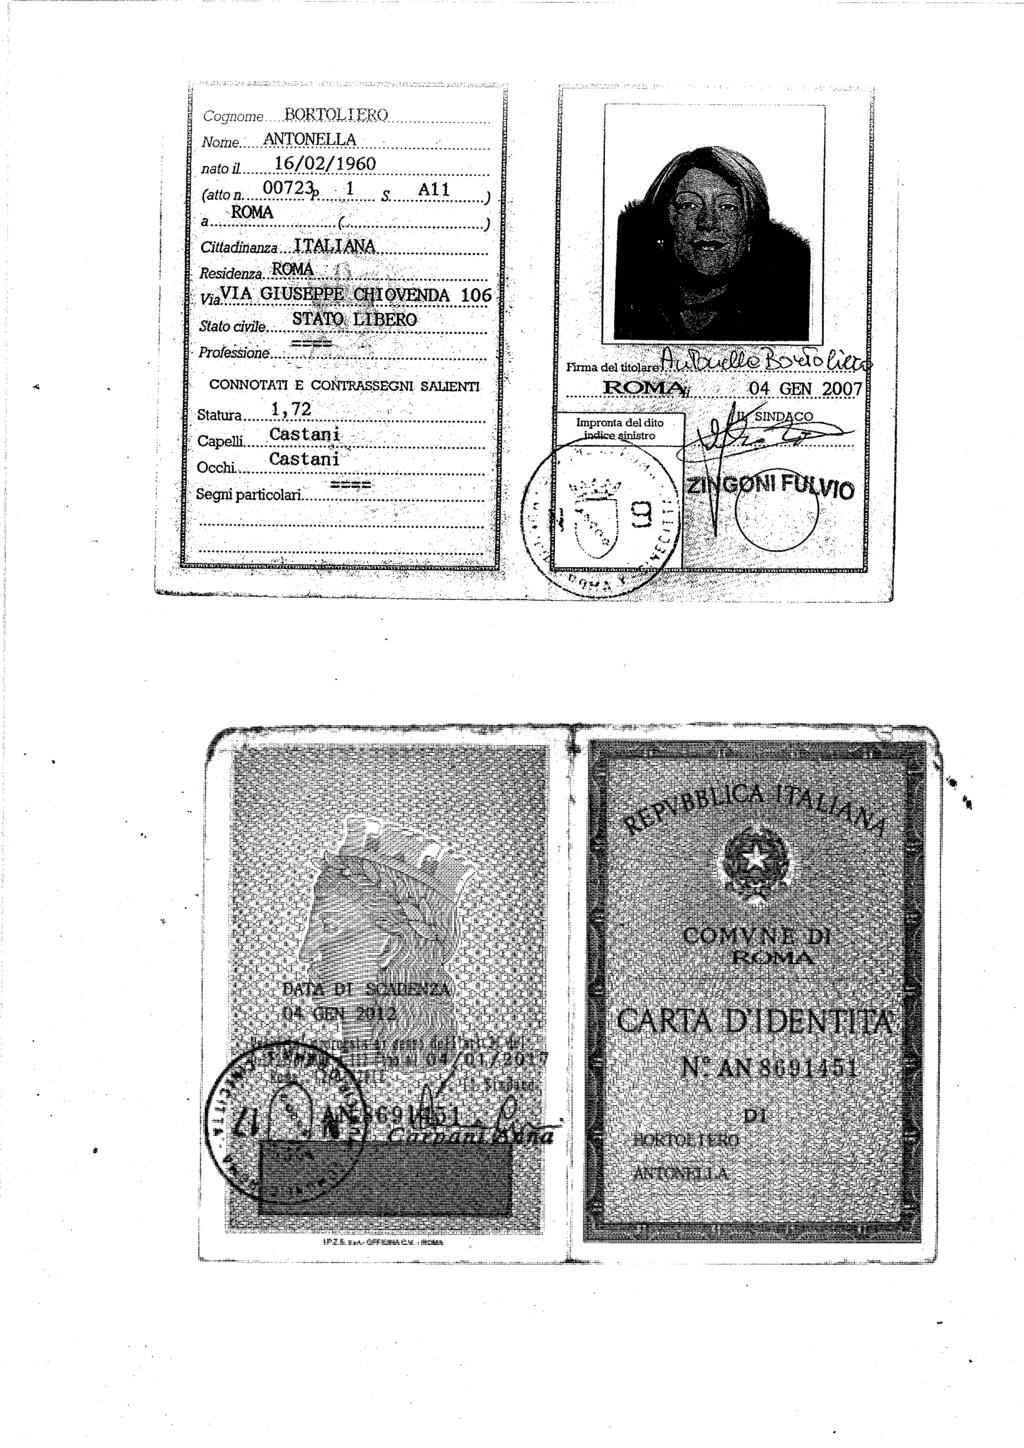 Allegato 4 - Documento d identità